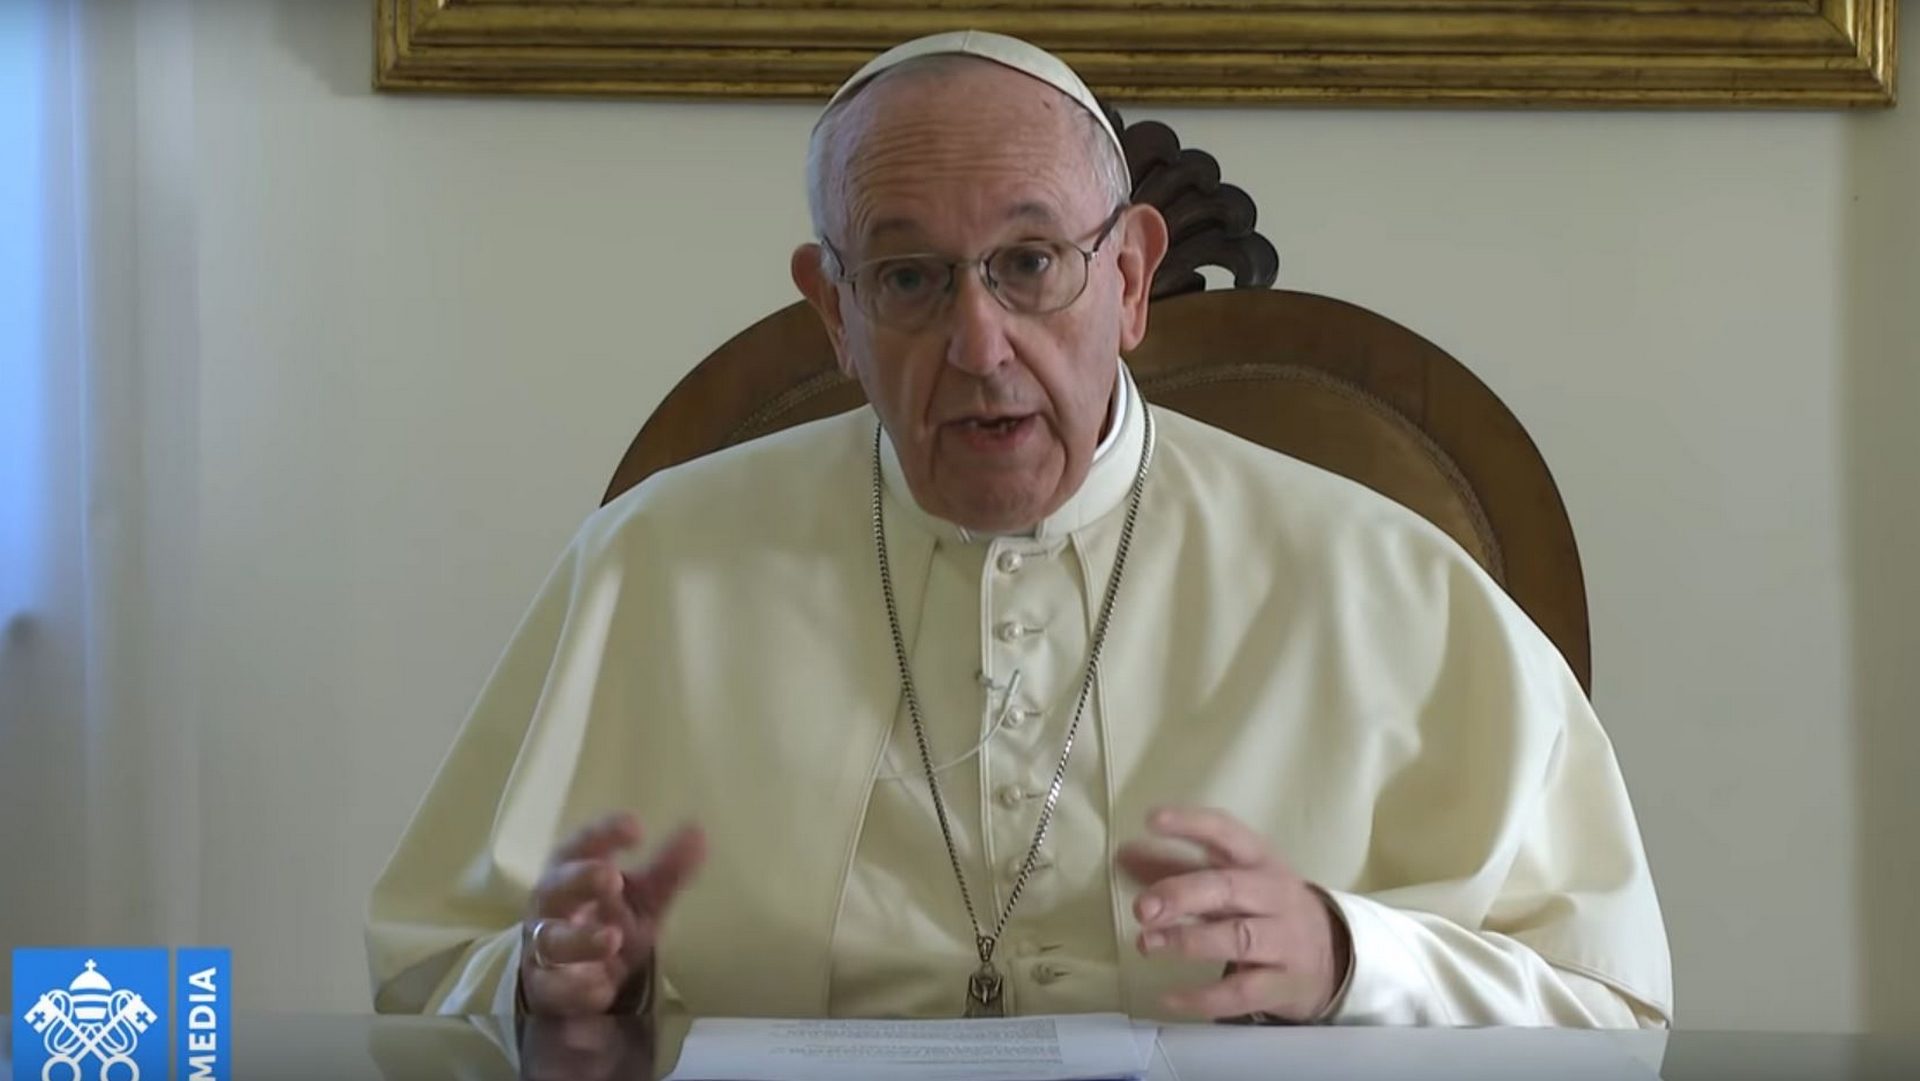 Le pape François a adressé un message vidéo aux participants d'un festival sur la doctrine sociale de l’Eglise | capture d'écran / Vatican Media